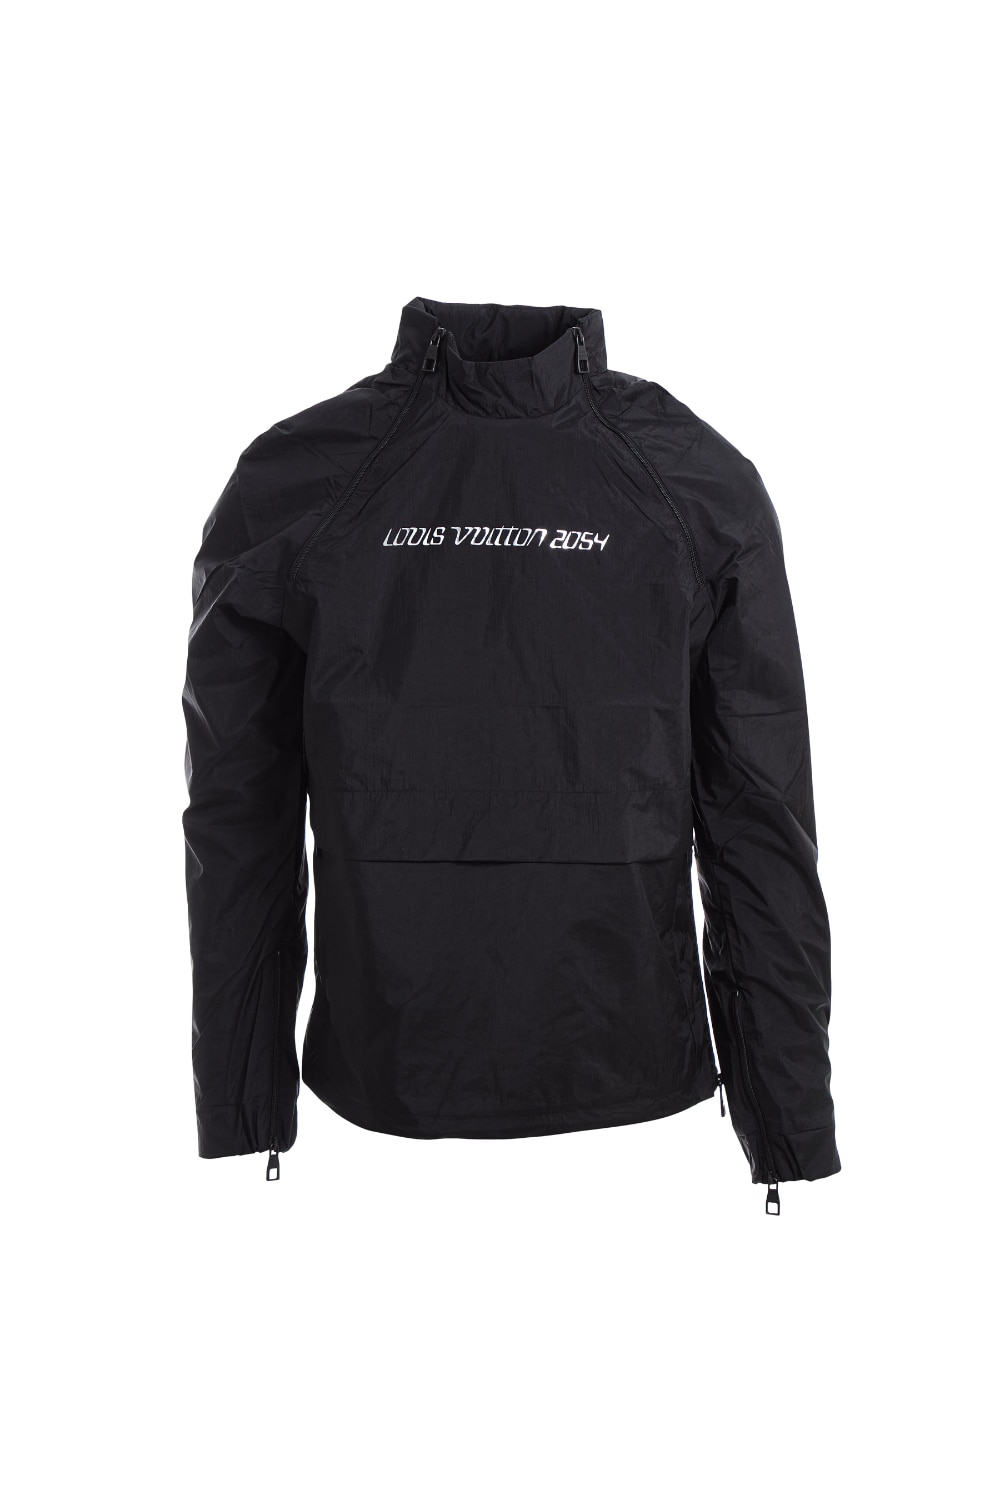 Férfi kabát, Louis Vuitton, vékony 2054, poliészter, fekete S INTL 